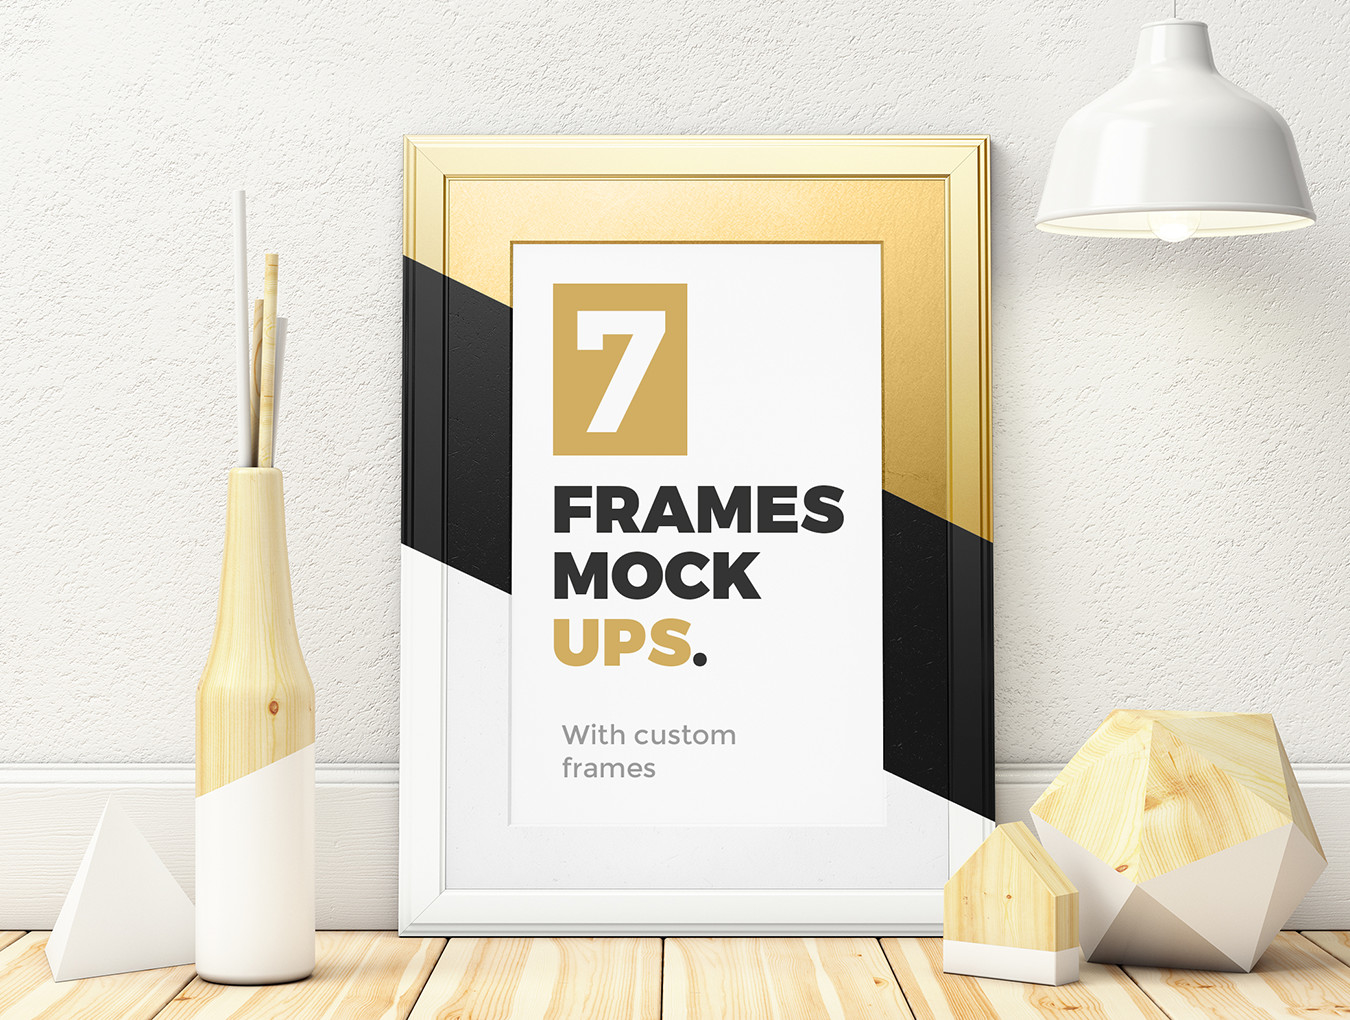 框架实体模型设计素材7 Frames Mockups